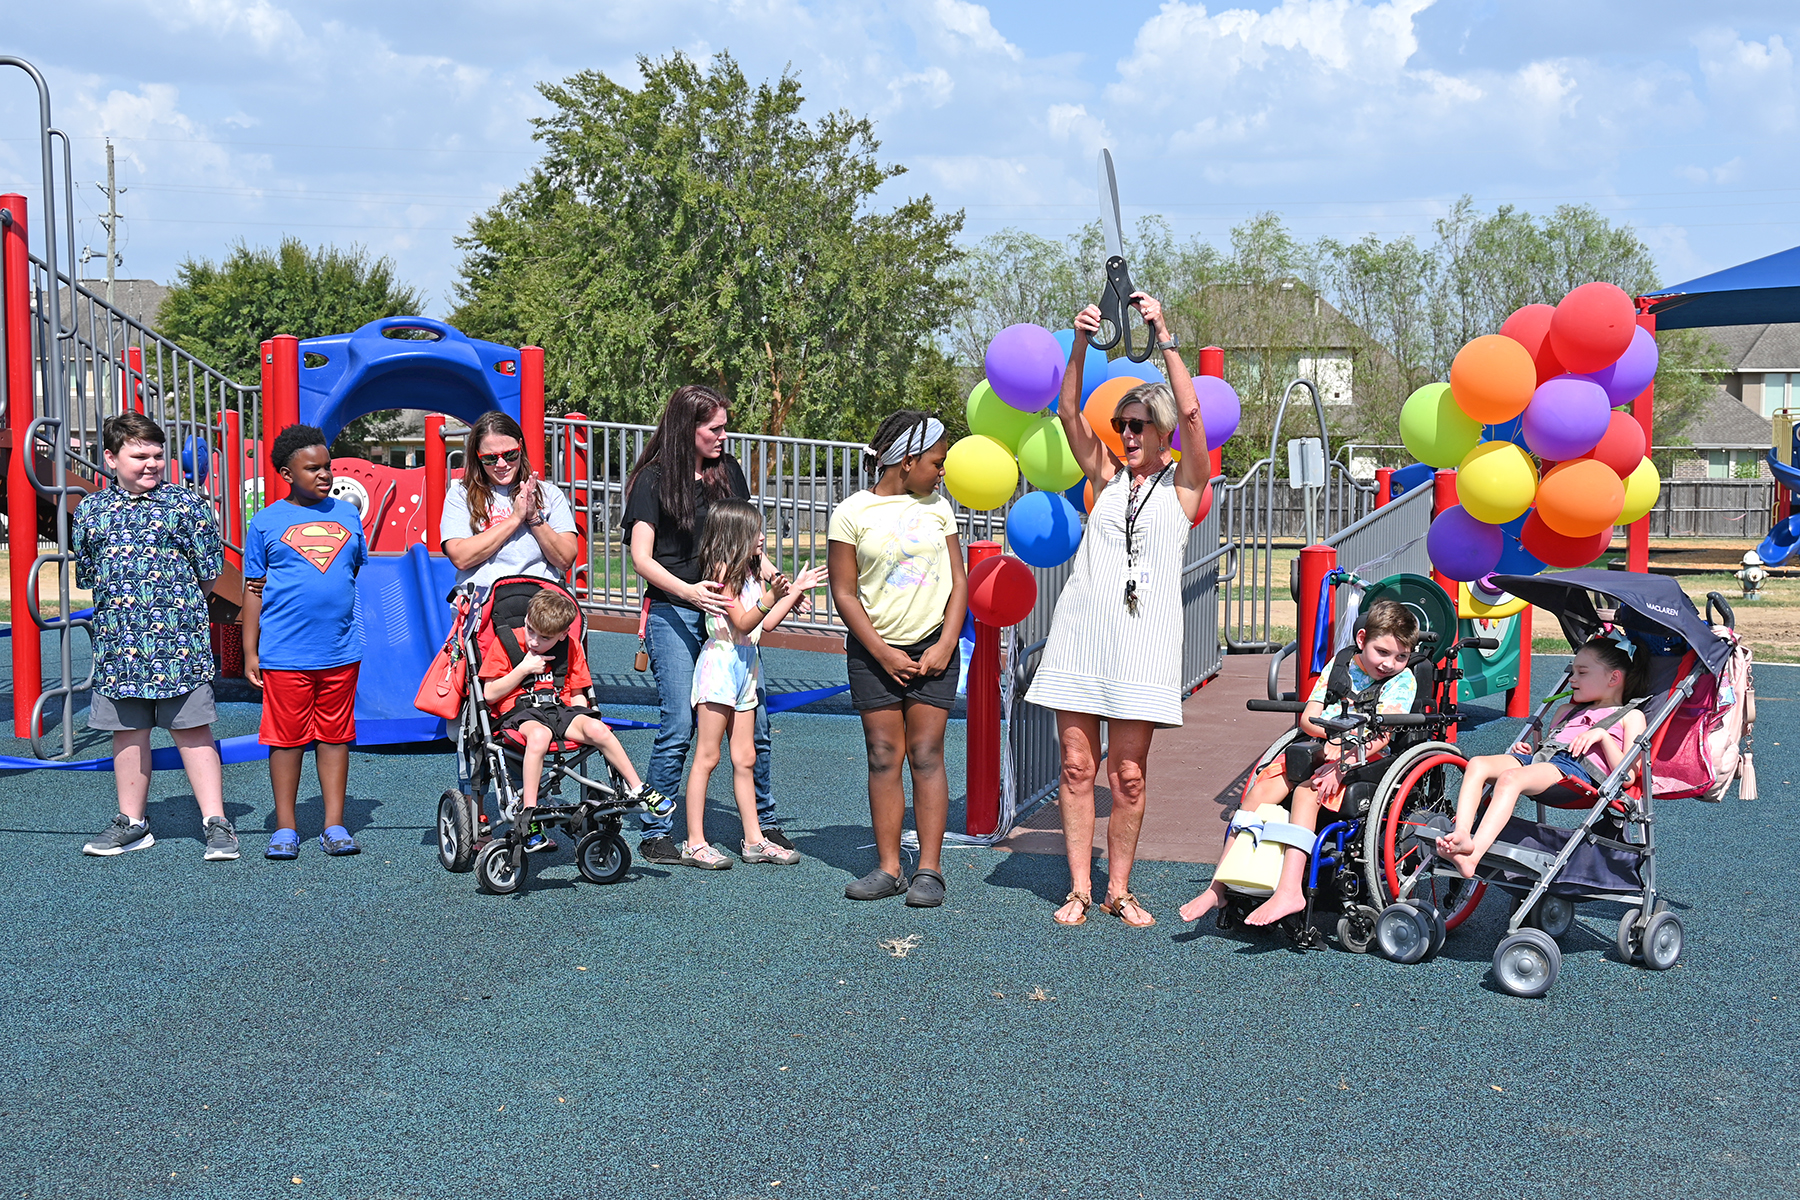 Swenke ES Installs CFISD's First All-Inclusive Playground